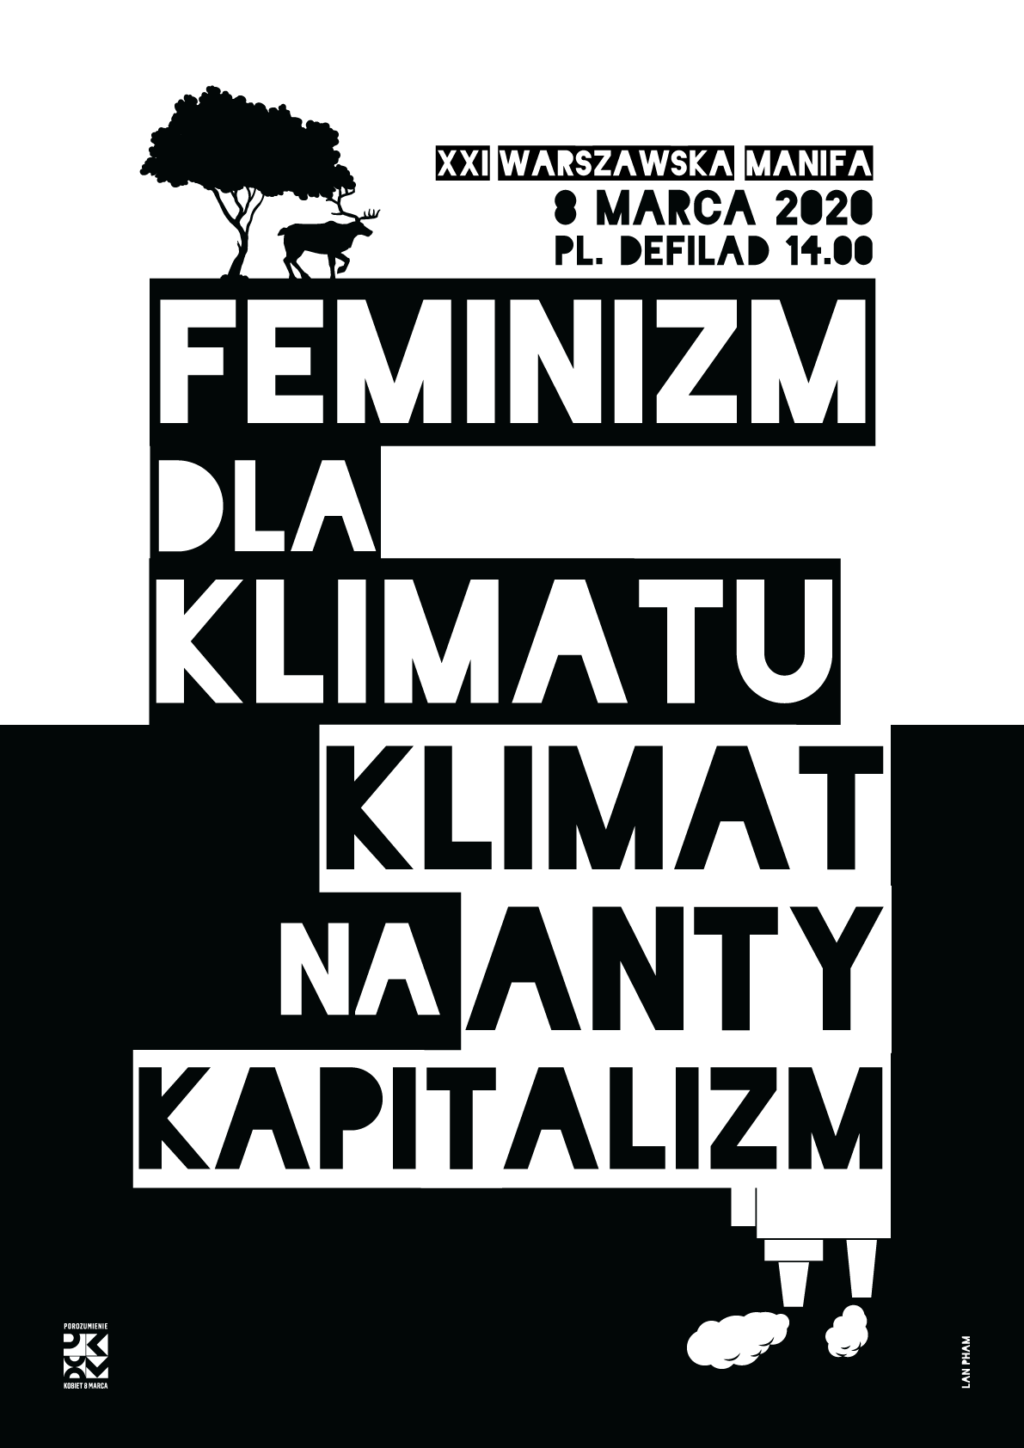 Feminizm dla klimatu, klimat na antykapitalizm